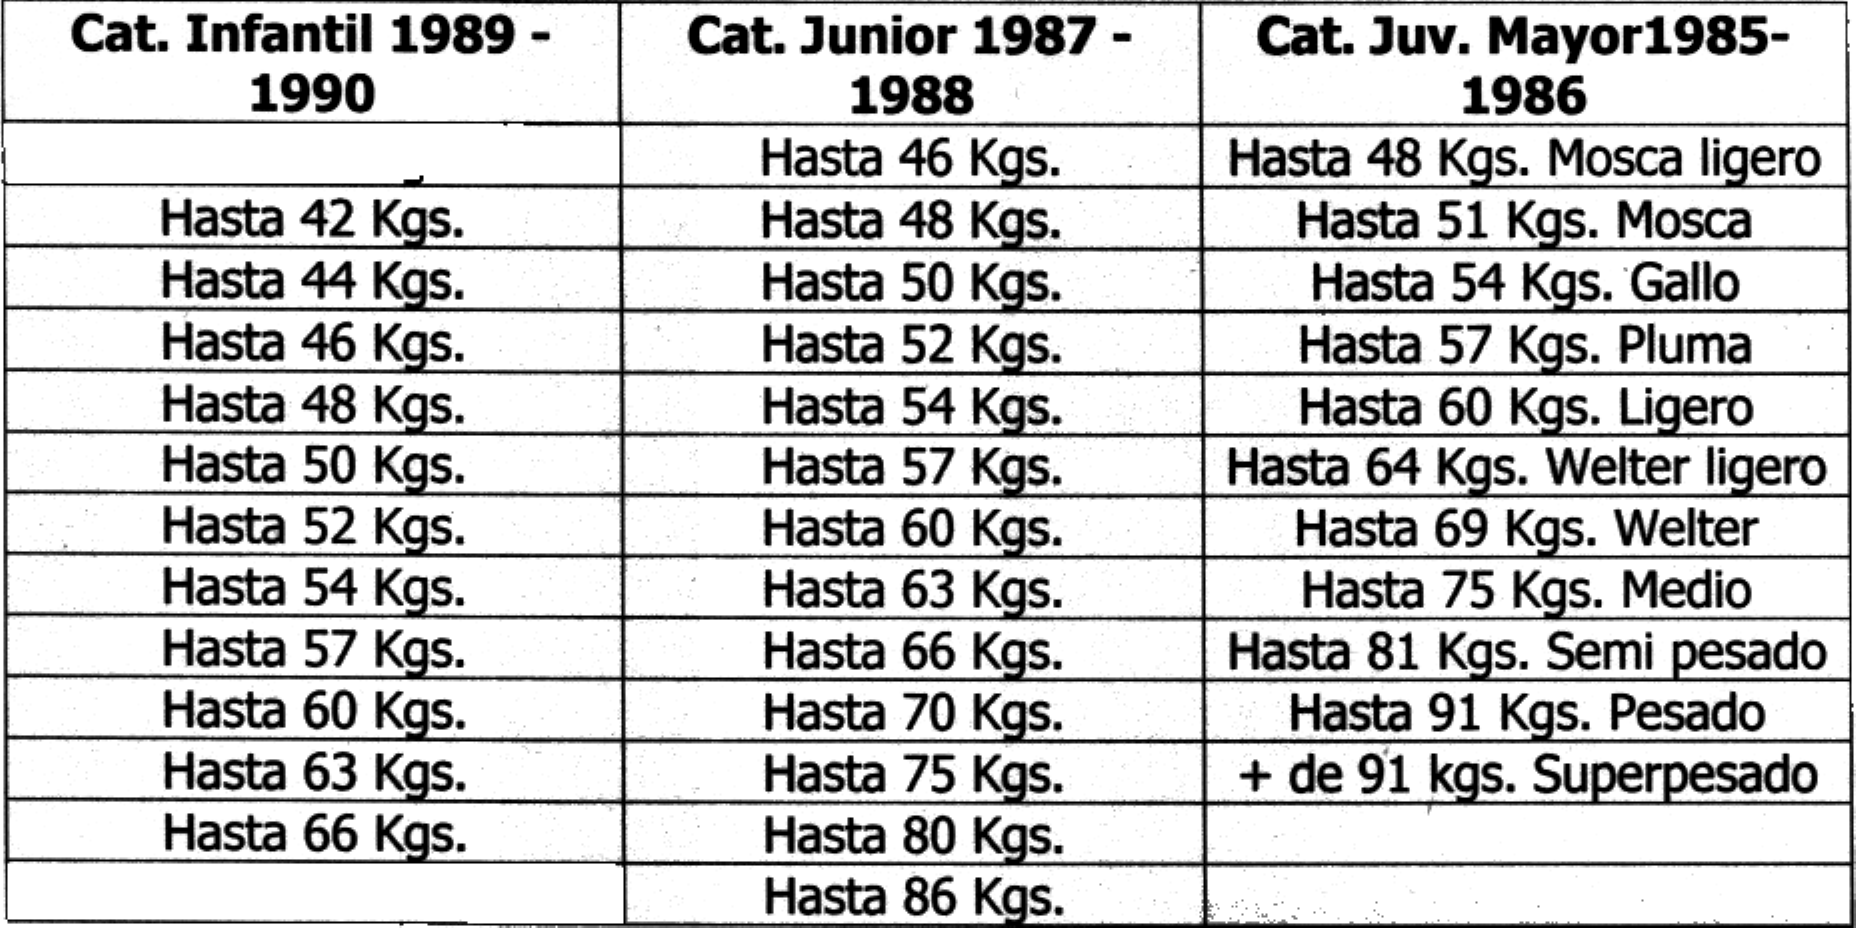 enlistan a continuación: Cato Infantil 1989-1990 Cato Junior 1987-1988 Cato Juv. Mayor198S- 1986 Hasta 40 KQs. Hasta 46 Kqs. Hasta 48 Kqs.